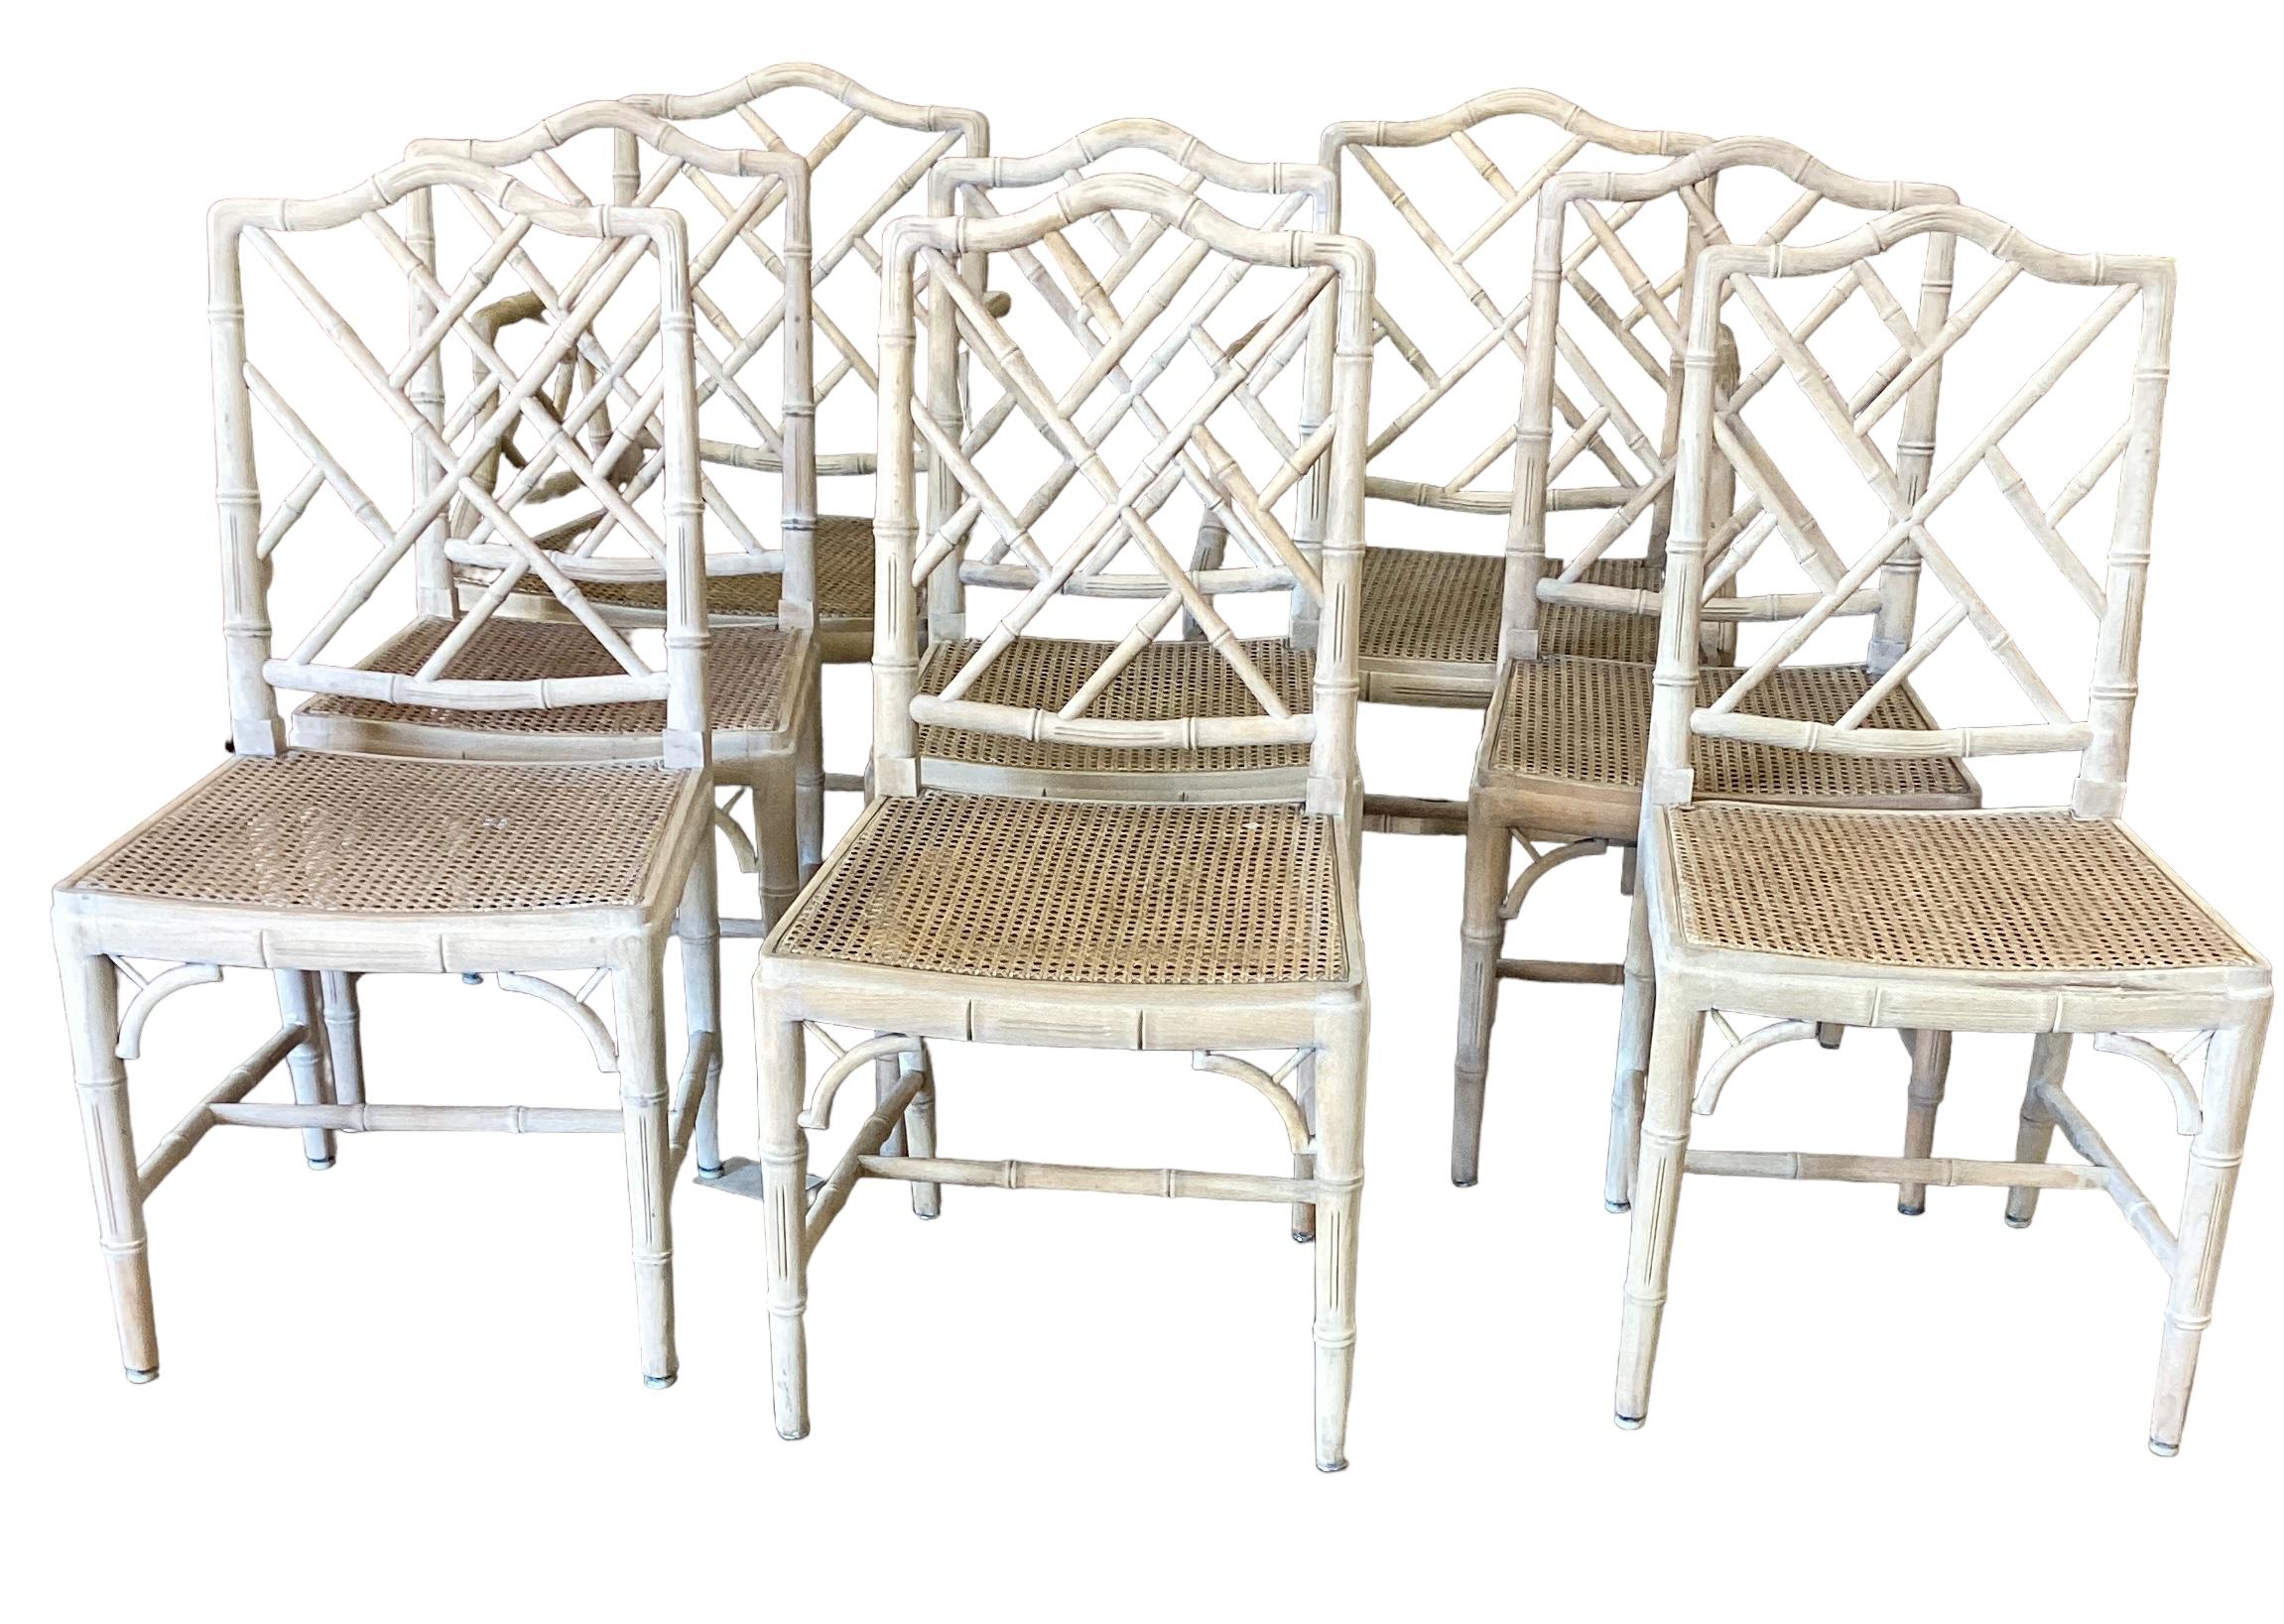 Ensemble de 8 chaises de salle à manger en faux bambou de style Chippendale chinois blanchi, avec assise cannelée. Les chaises latérales mesurent 18 